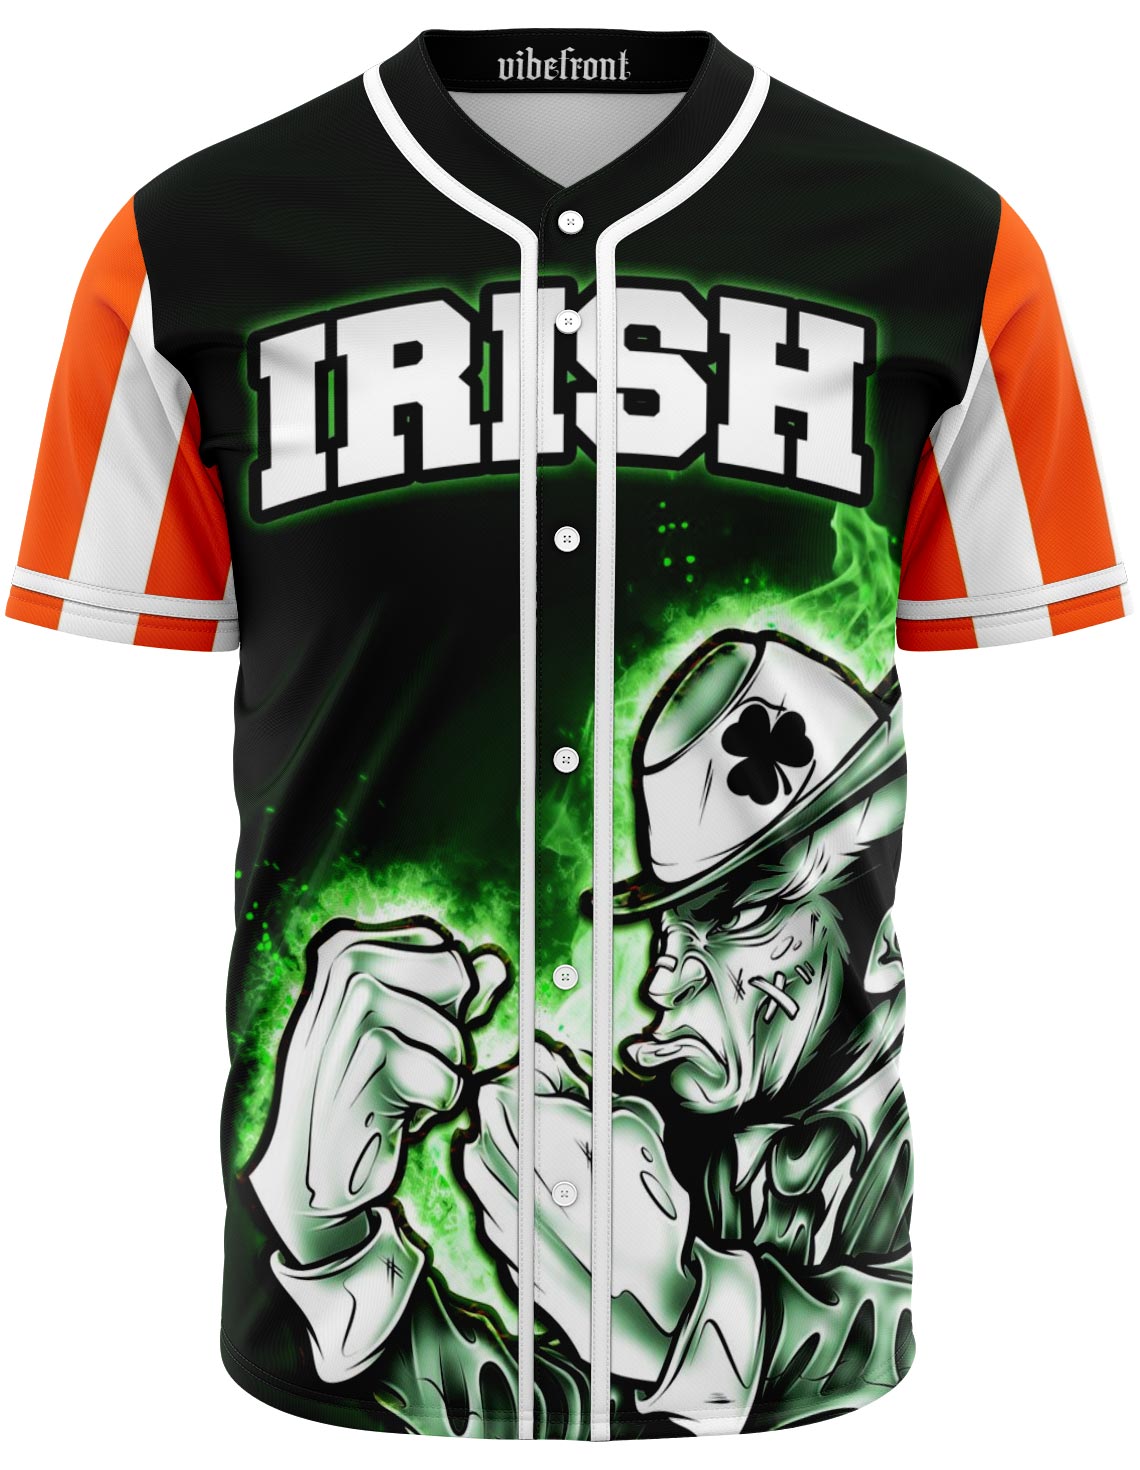 irish baseball jersey